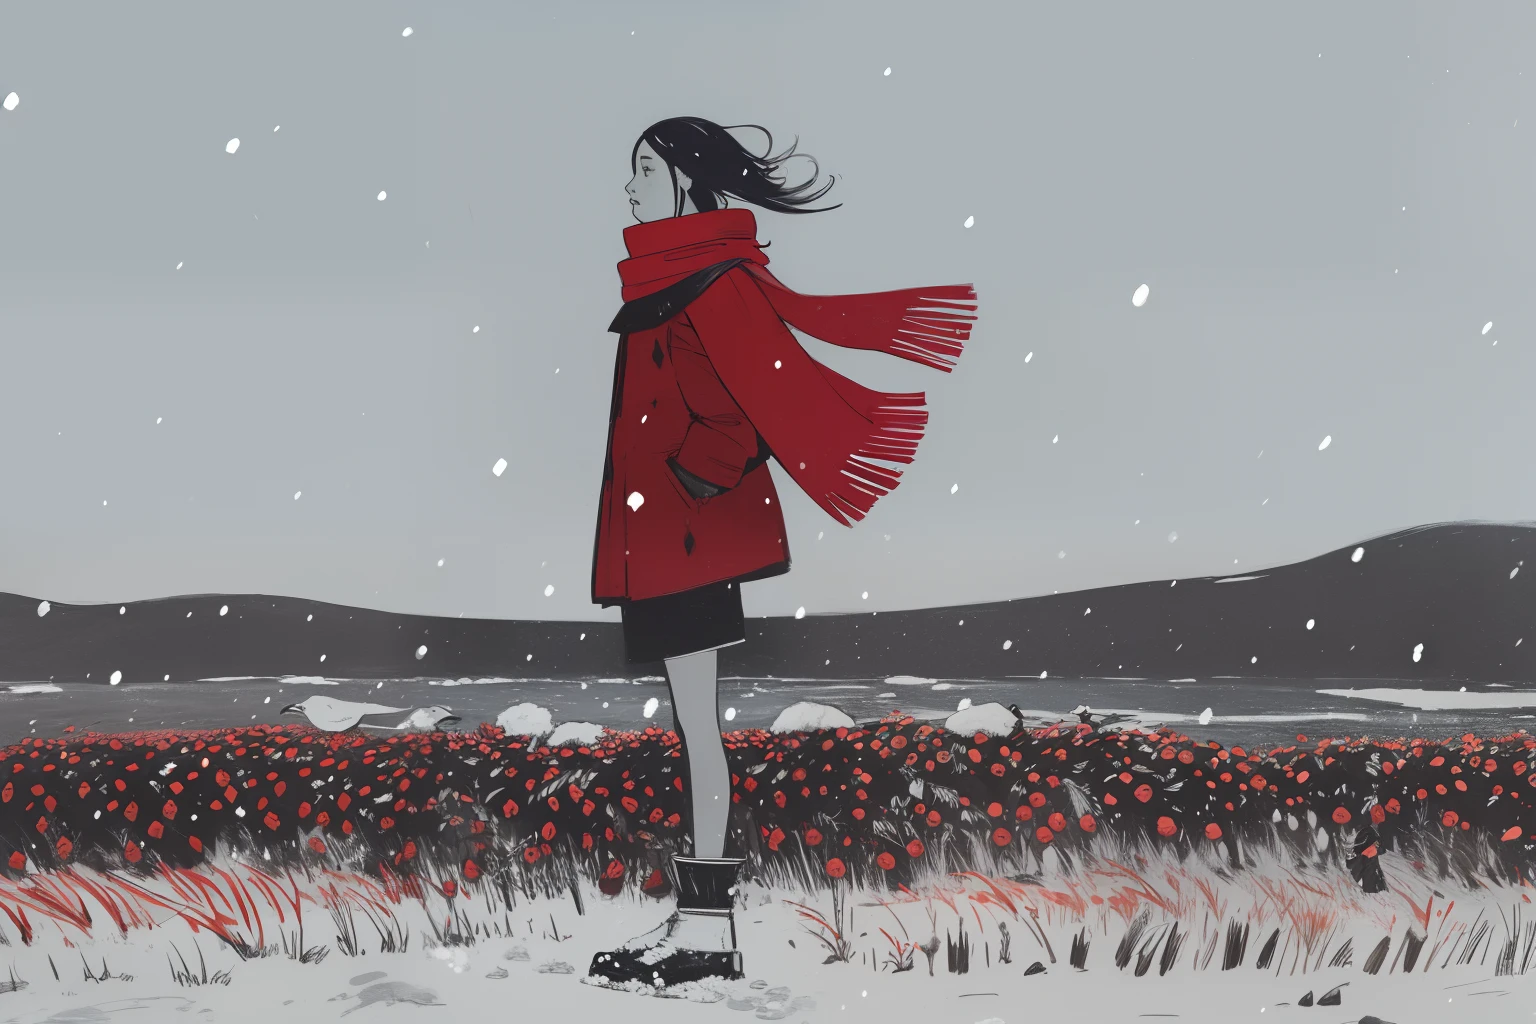 (Stammes, ethnisch, einheimische Inuit), 1 Mädchen, roter Schal im Wind, Stehen, winter, Schneesturm, wind, starker Schneefall, Tundra, Sumpf, rote Beeren, grau, Weiß, dunkel, Nacht, riesige Vögel im Himmel,  skizzieren